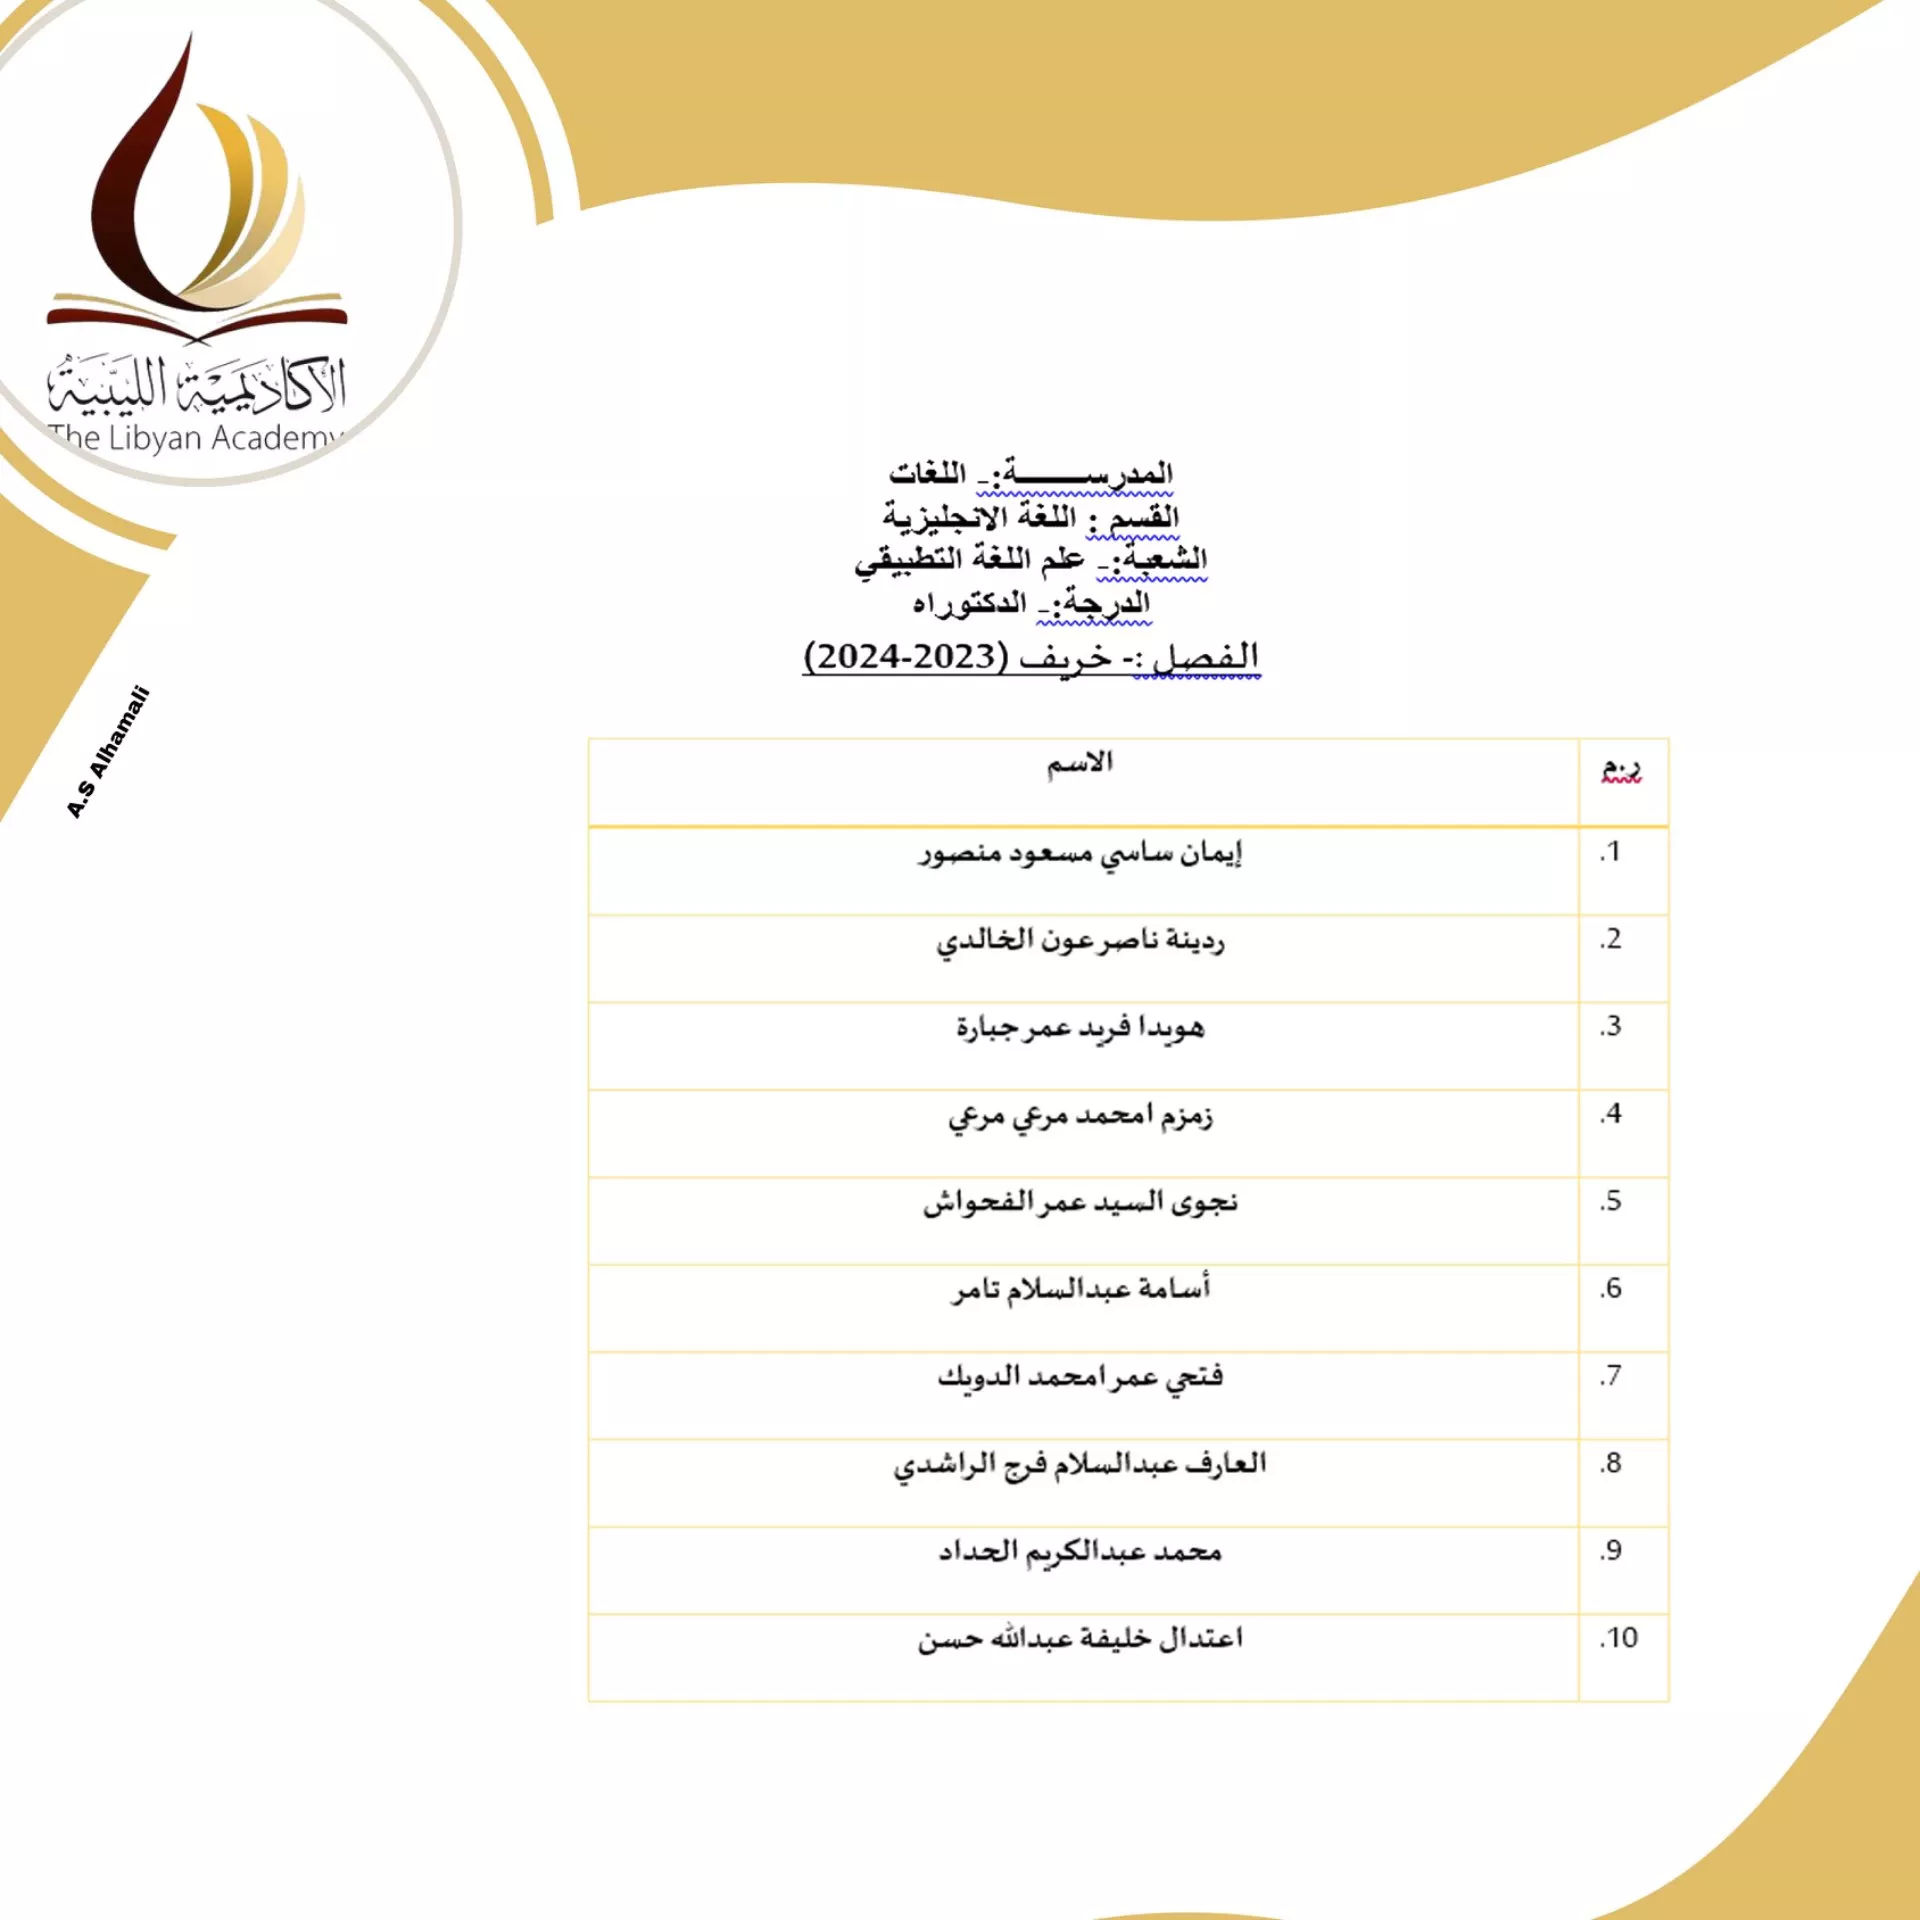 نتائج امتحانات المفاضلة للمتقدمين لدراسة الدكتوراه بالأكاديمية الليبية للدراسات العليا لمدرسة اللغات   للفصل الدراسي خريف 2023/ 2024